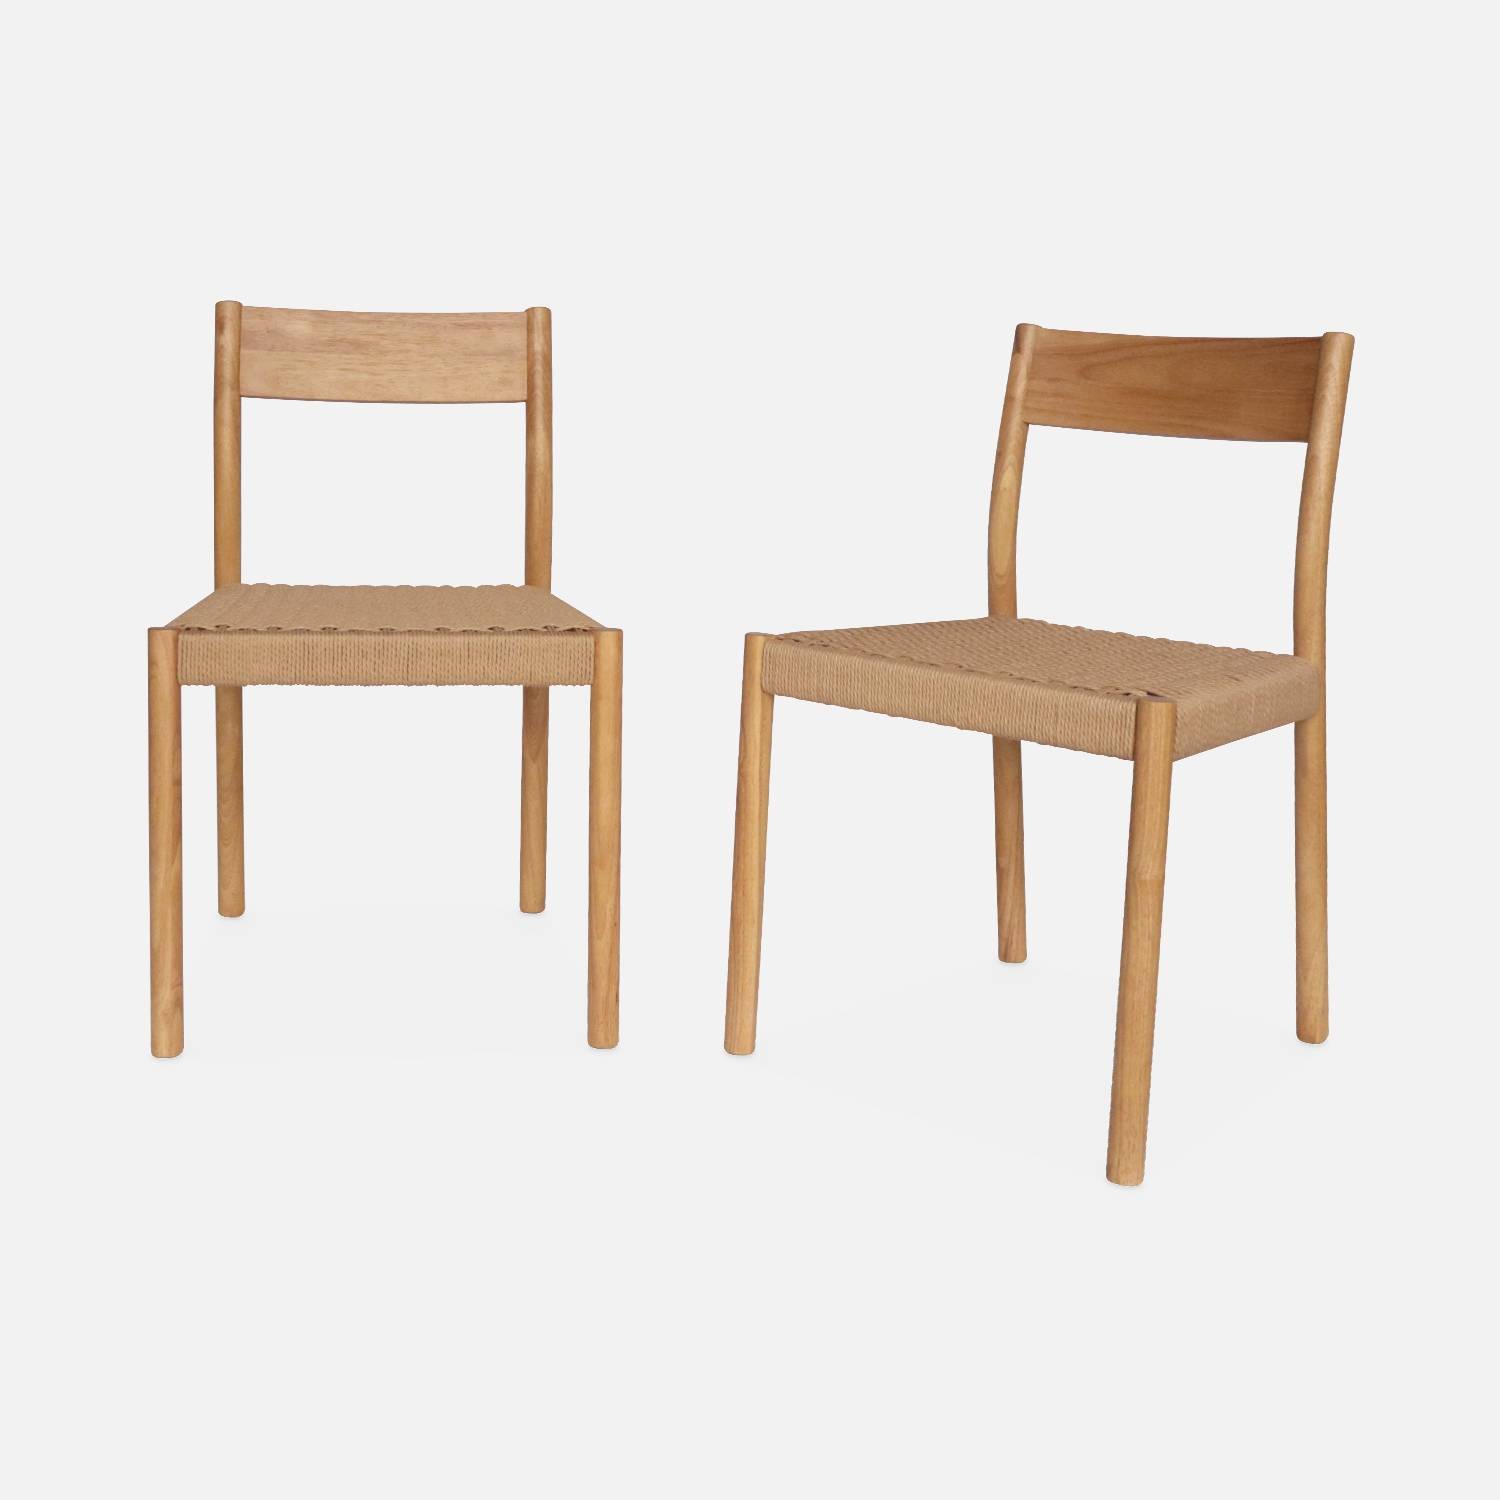 Set von 2 naturfarbenen Stühlen aus Holz und Seilgeflecht